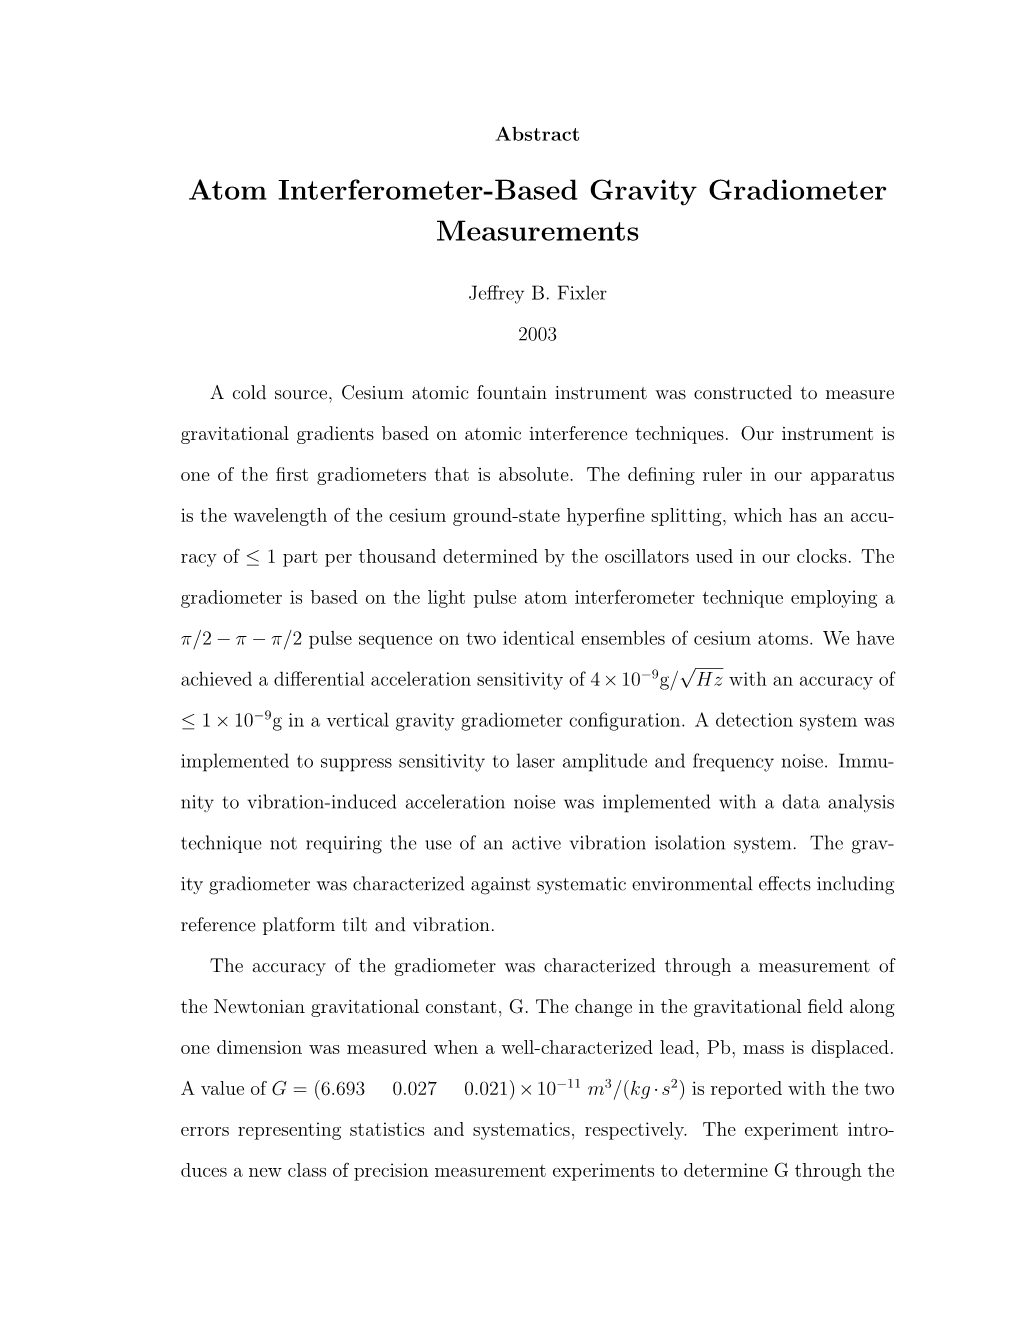 Atom Interferometer-Based Gravity Gradiometer Measurements